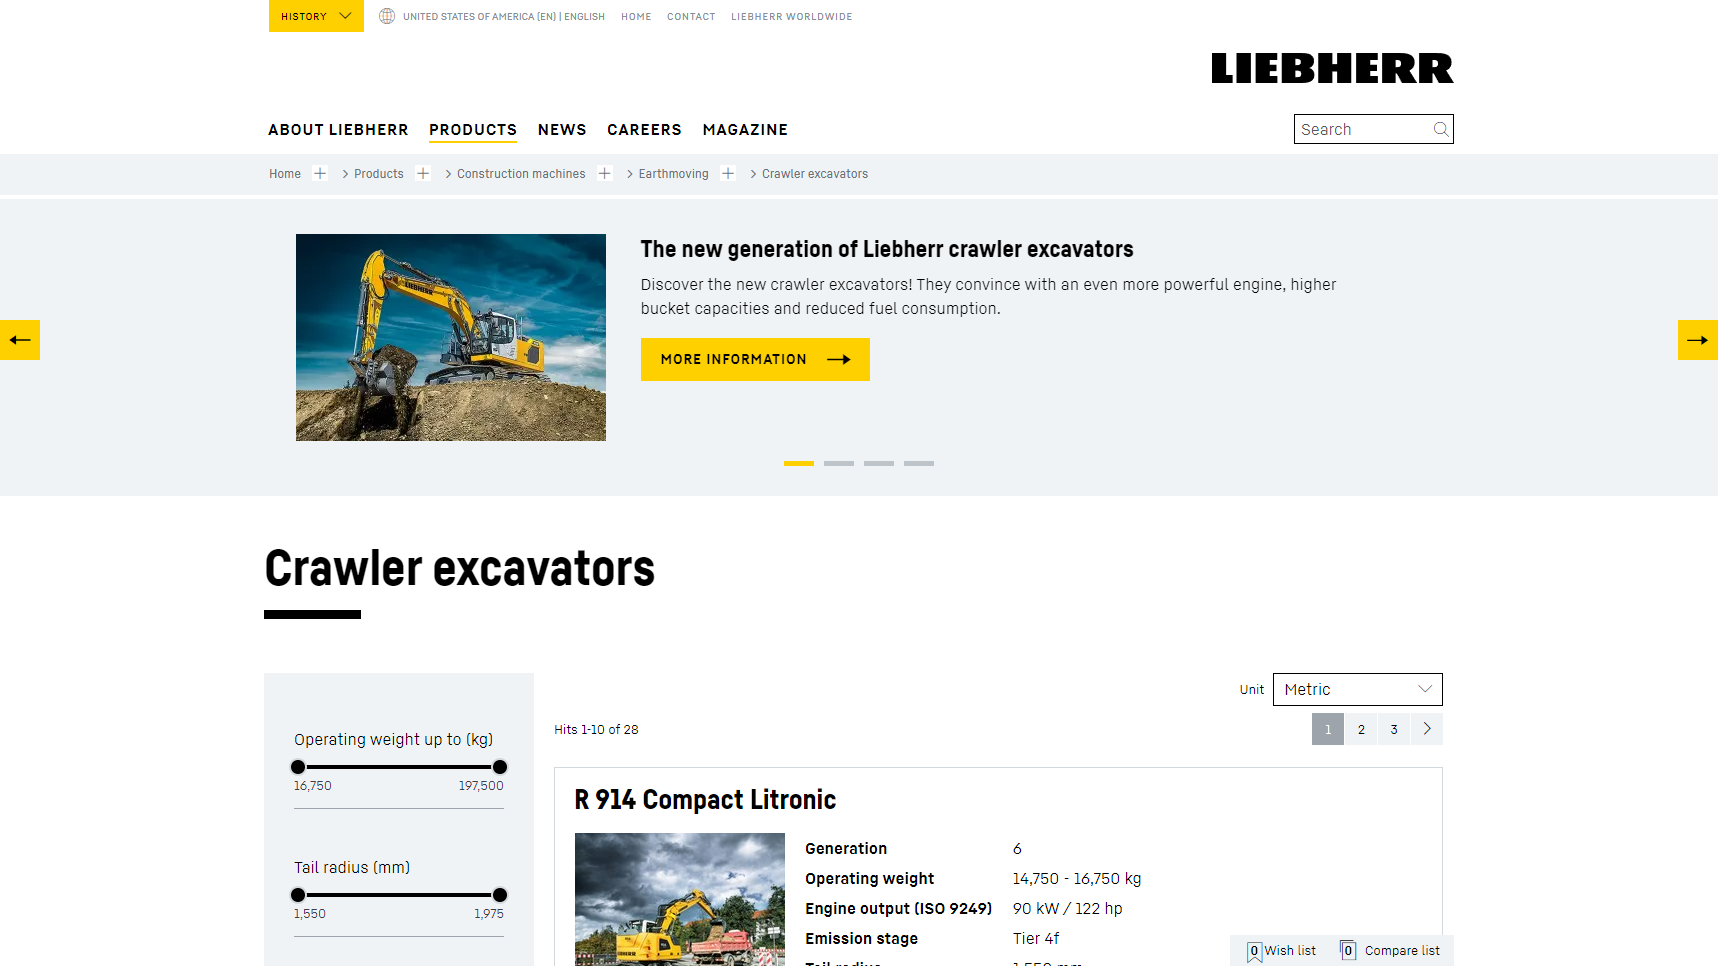 Liebherr - Earthmoving Equipment Manufacturer